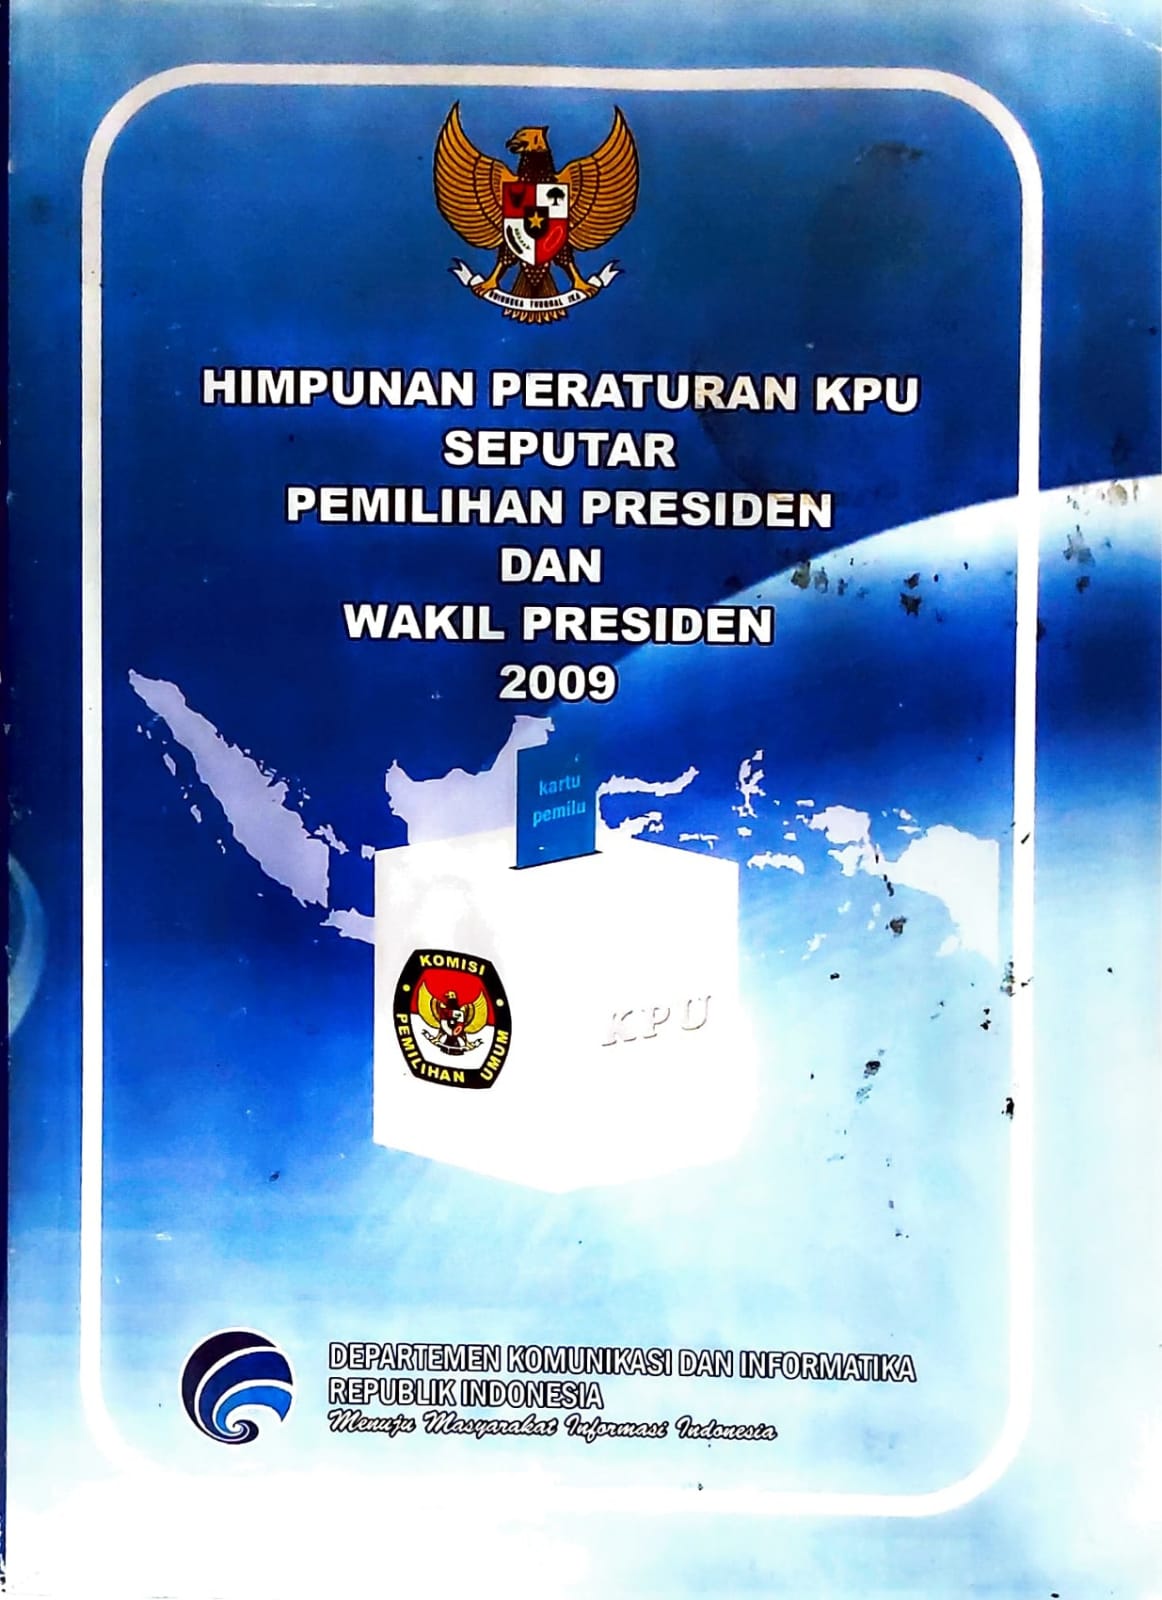 Himpunan peraturan kpu seputar pemilihan presiden dan wakil presiden 2009